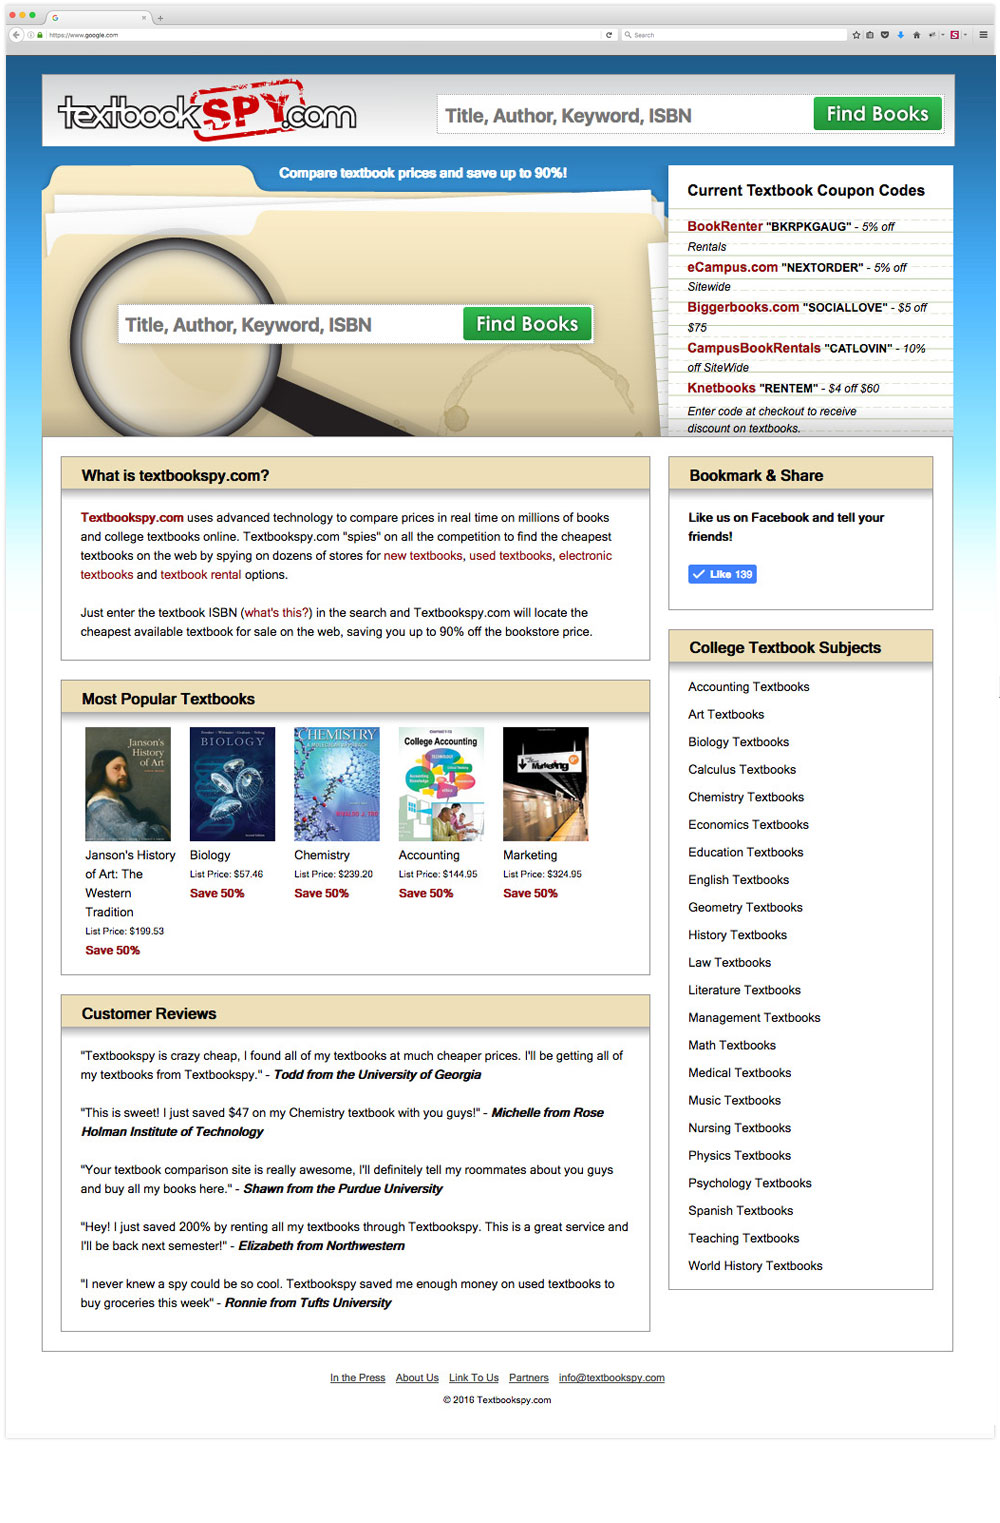 Textbookspy.com - website design